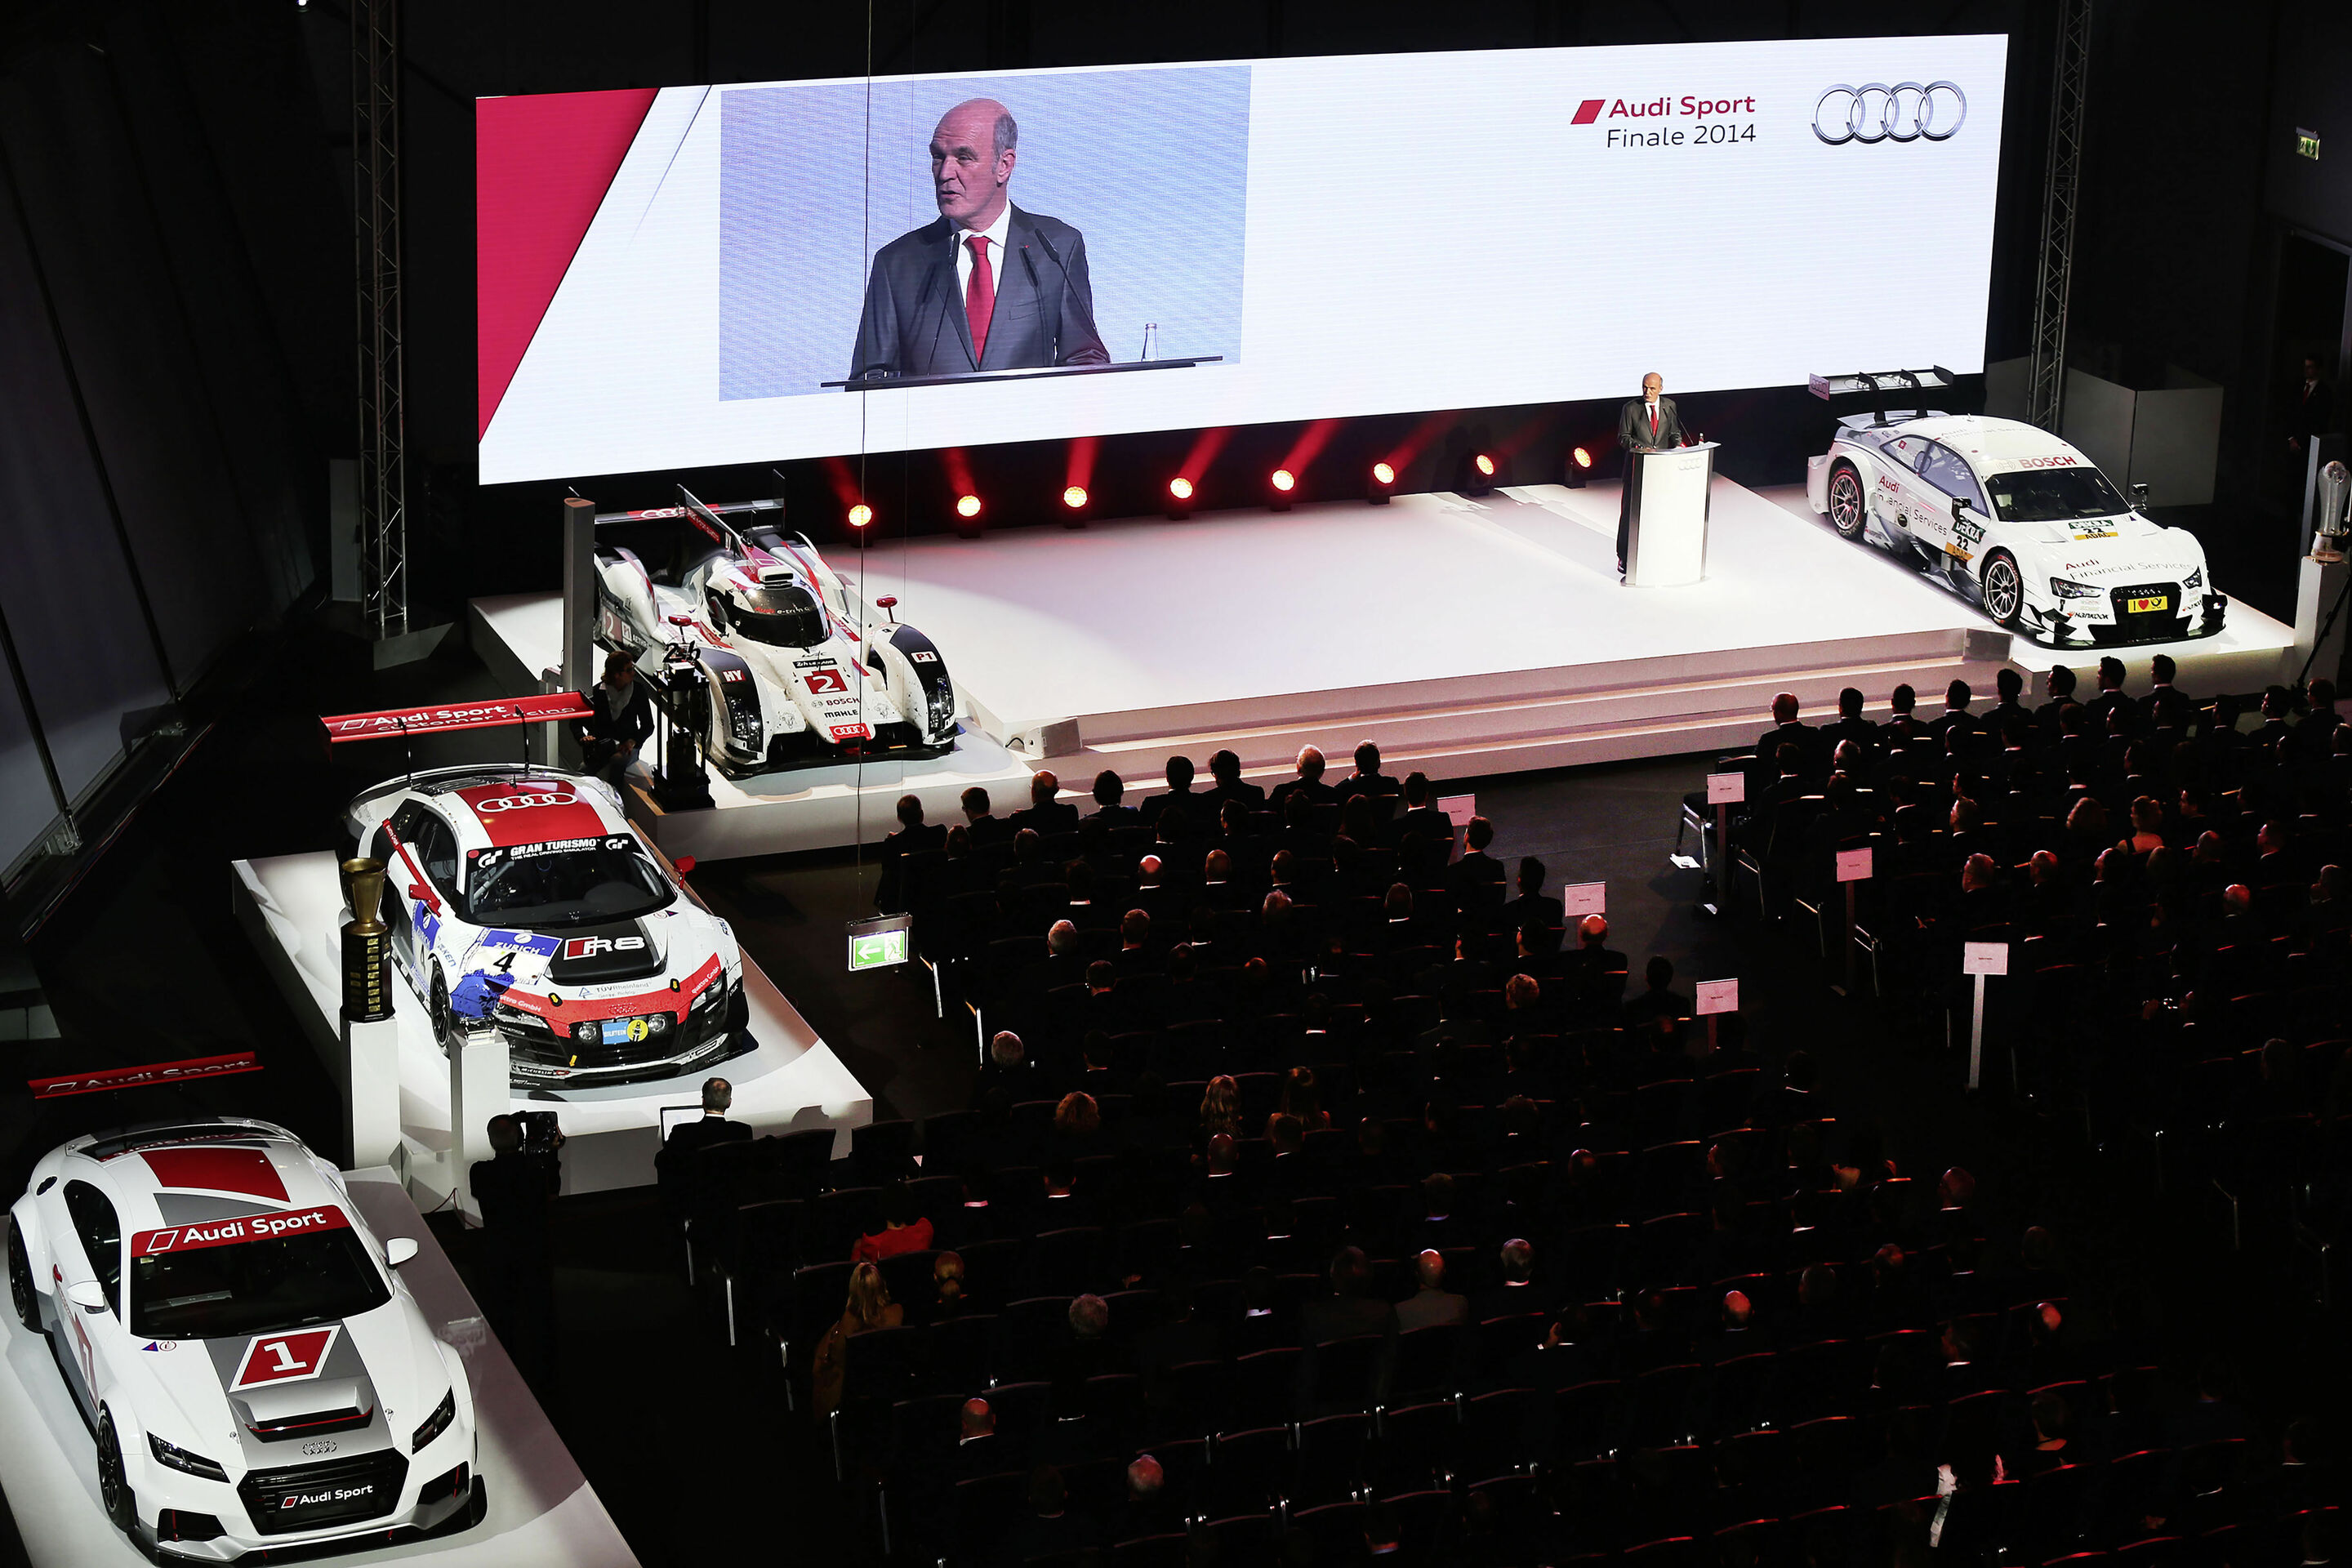 Audi: Wachstum auch im Motorsport